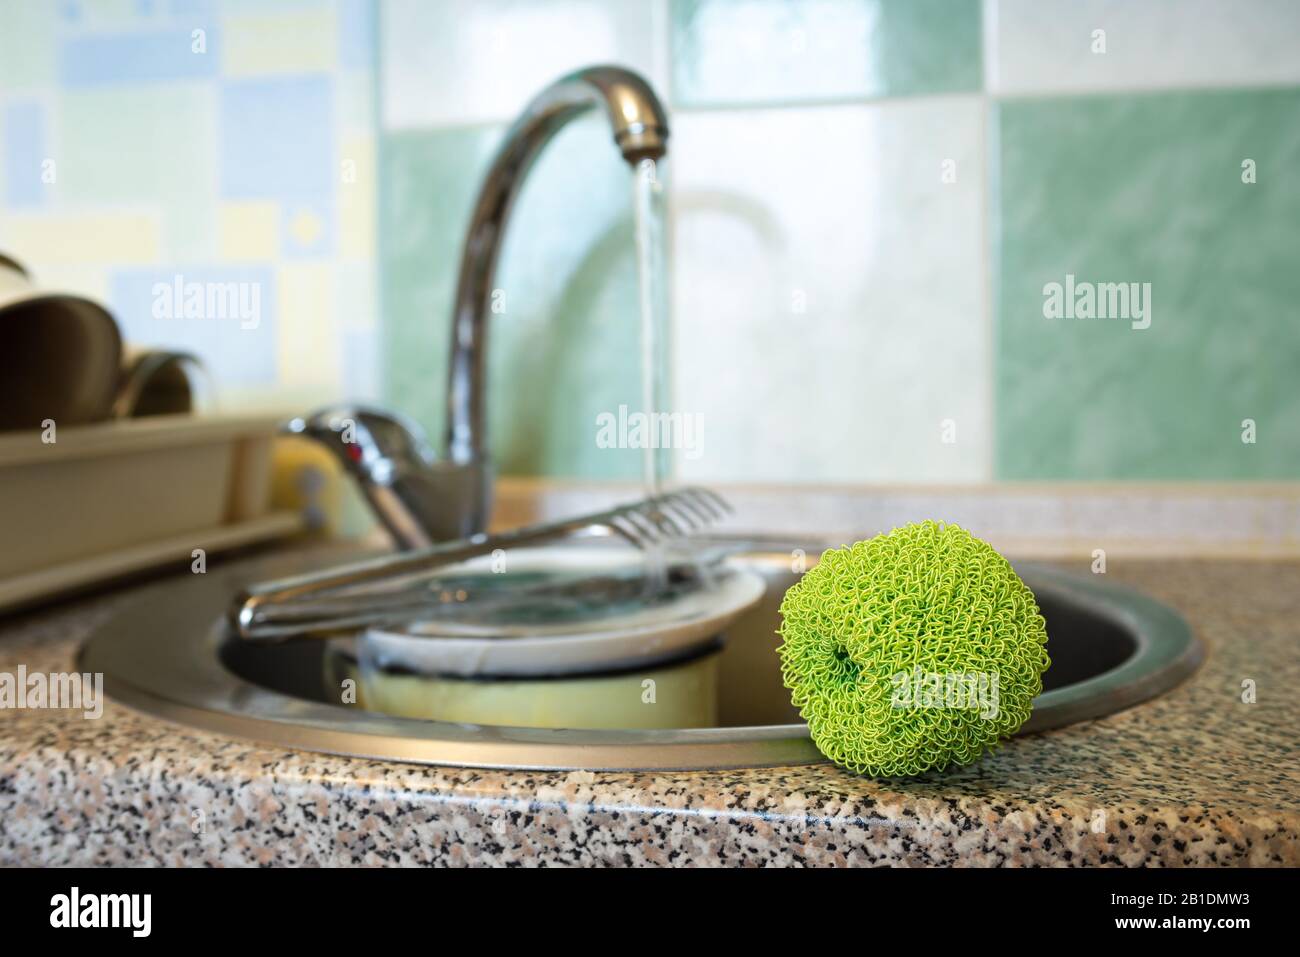 Tampon à récurer en plastique vert, utilisé pour nettoyer les plats, les assiettes, les casseroles et les pots, près de l'évier dans la cuisine. Banque D'Images